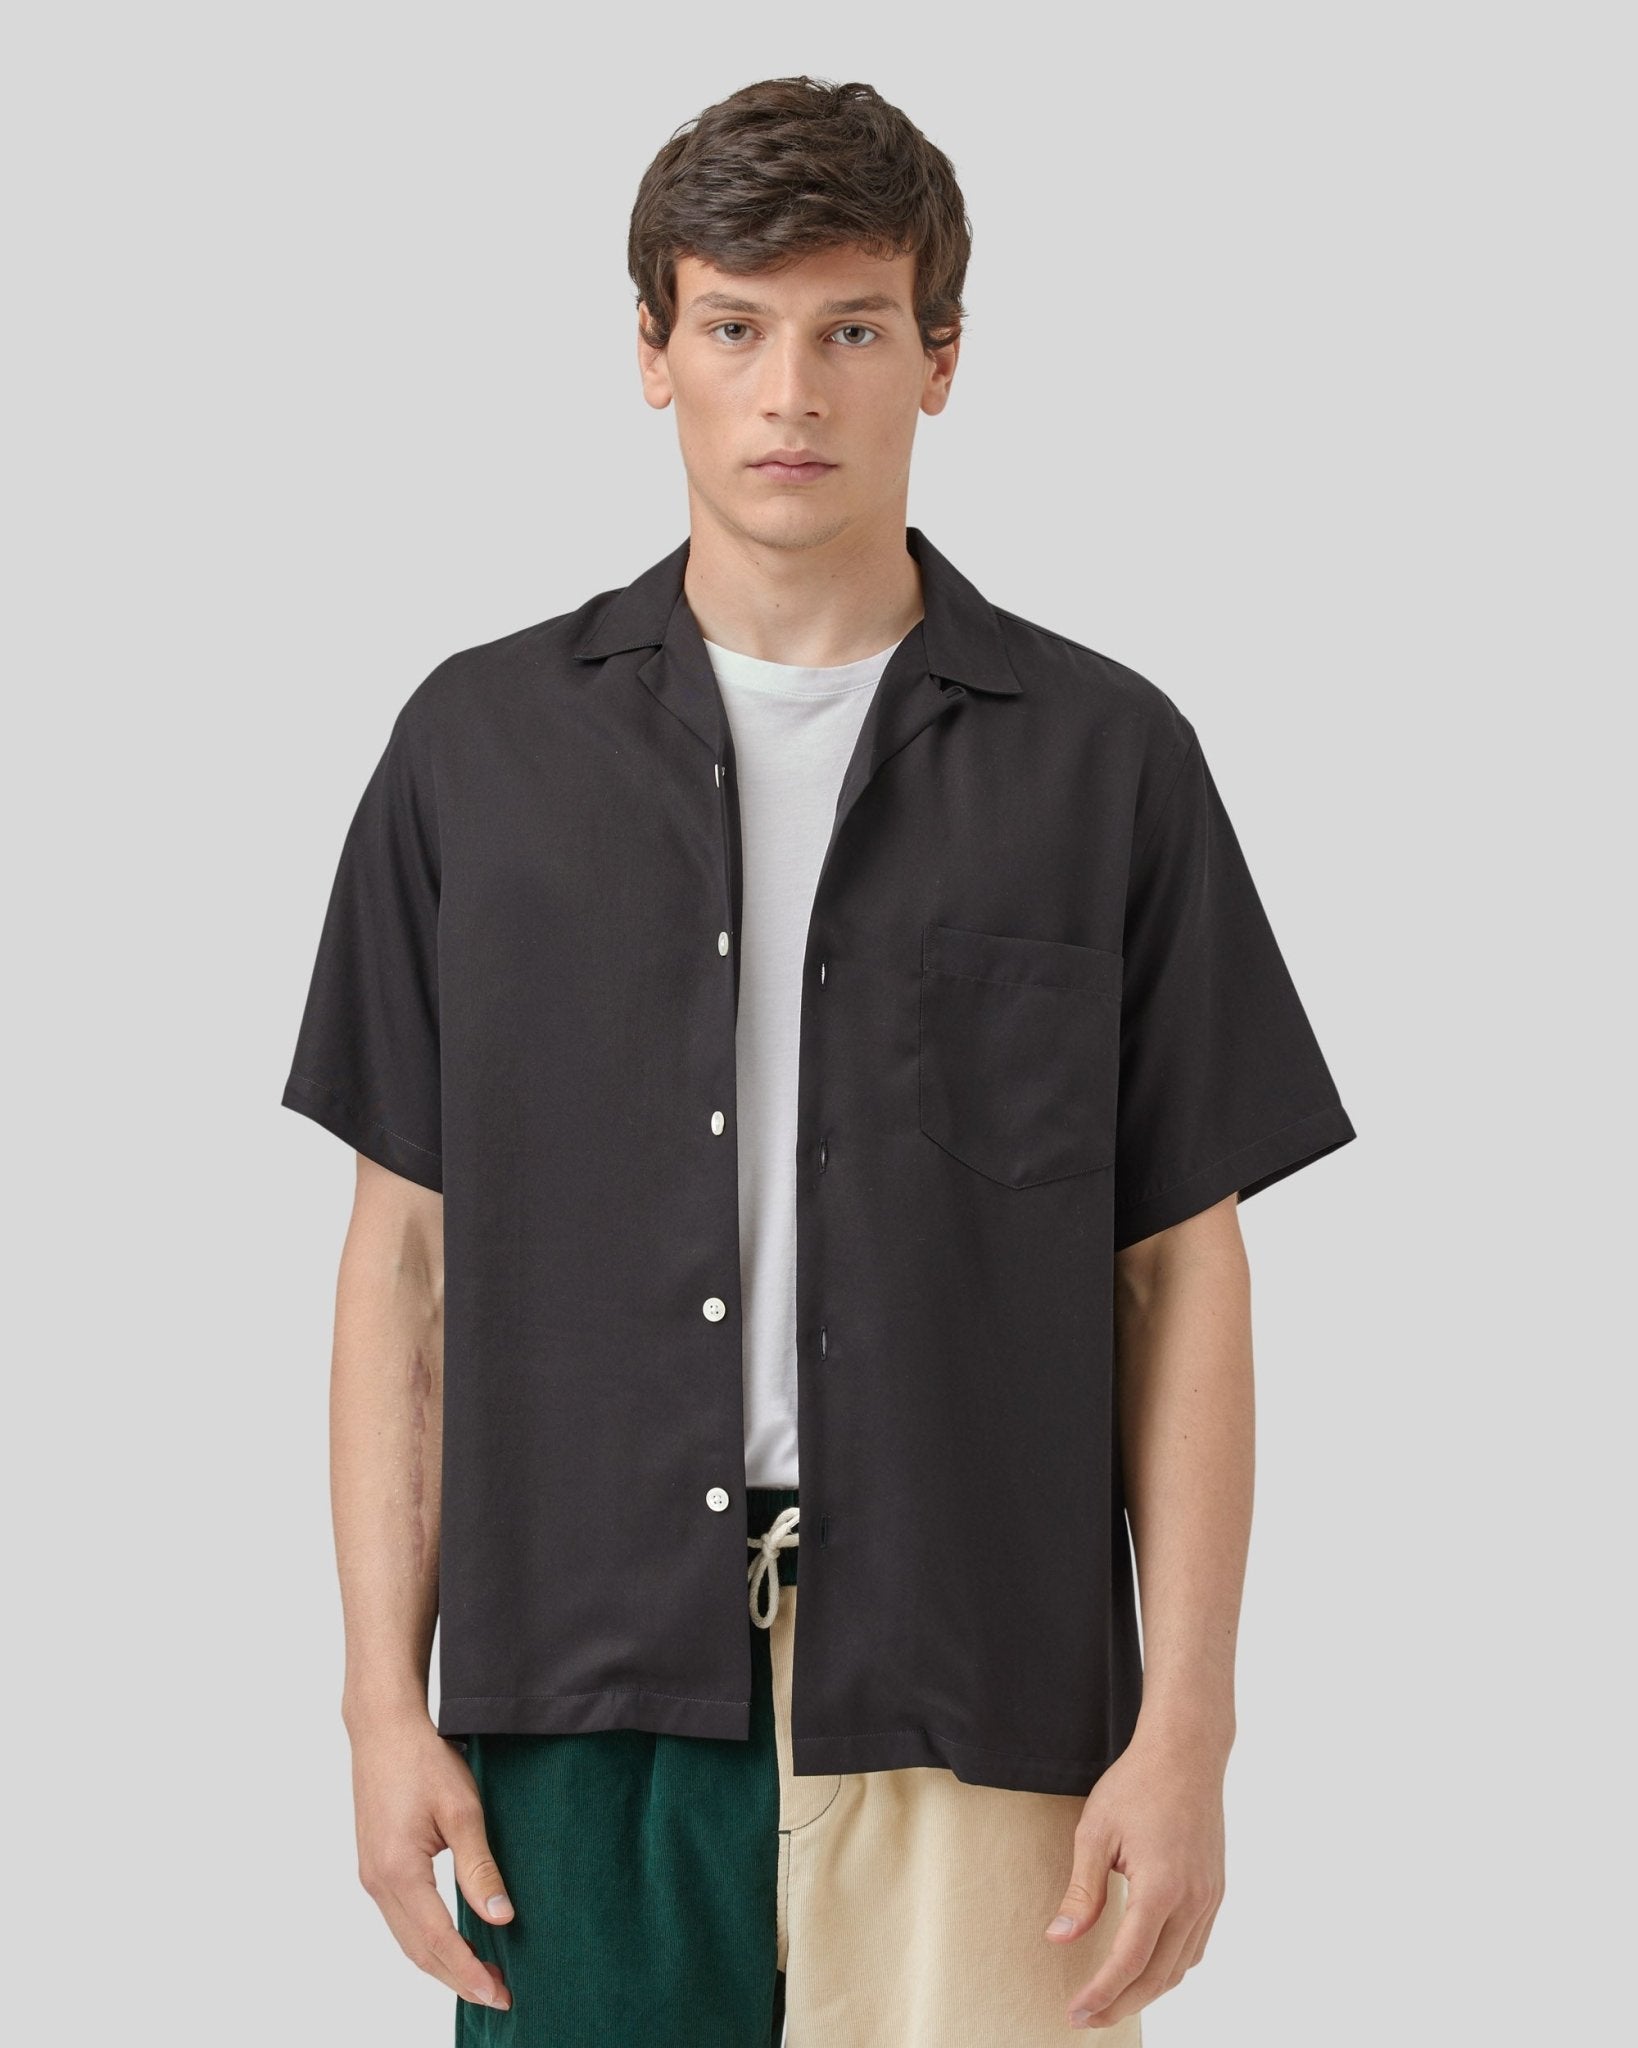 Dogtown Shirt - Portuguese Flannel - Danali - DOGTOWN-BLACK-M